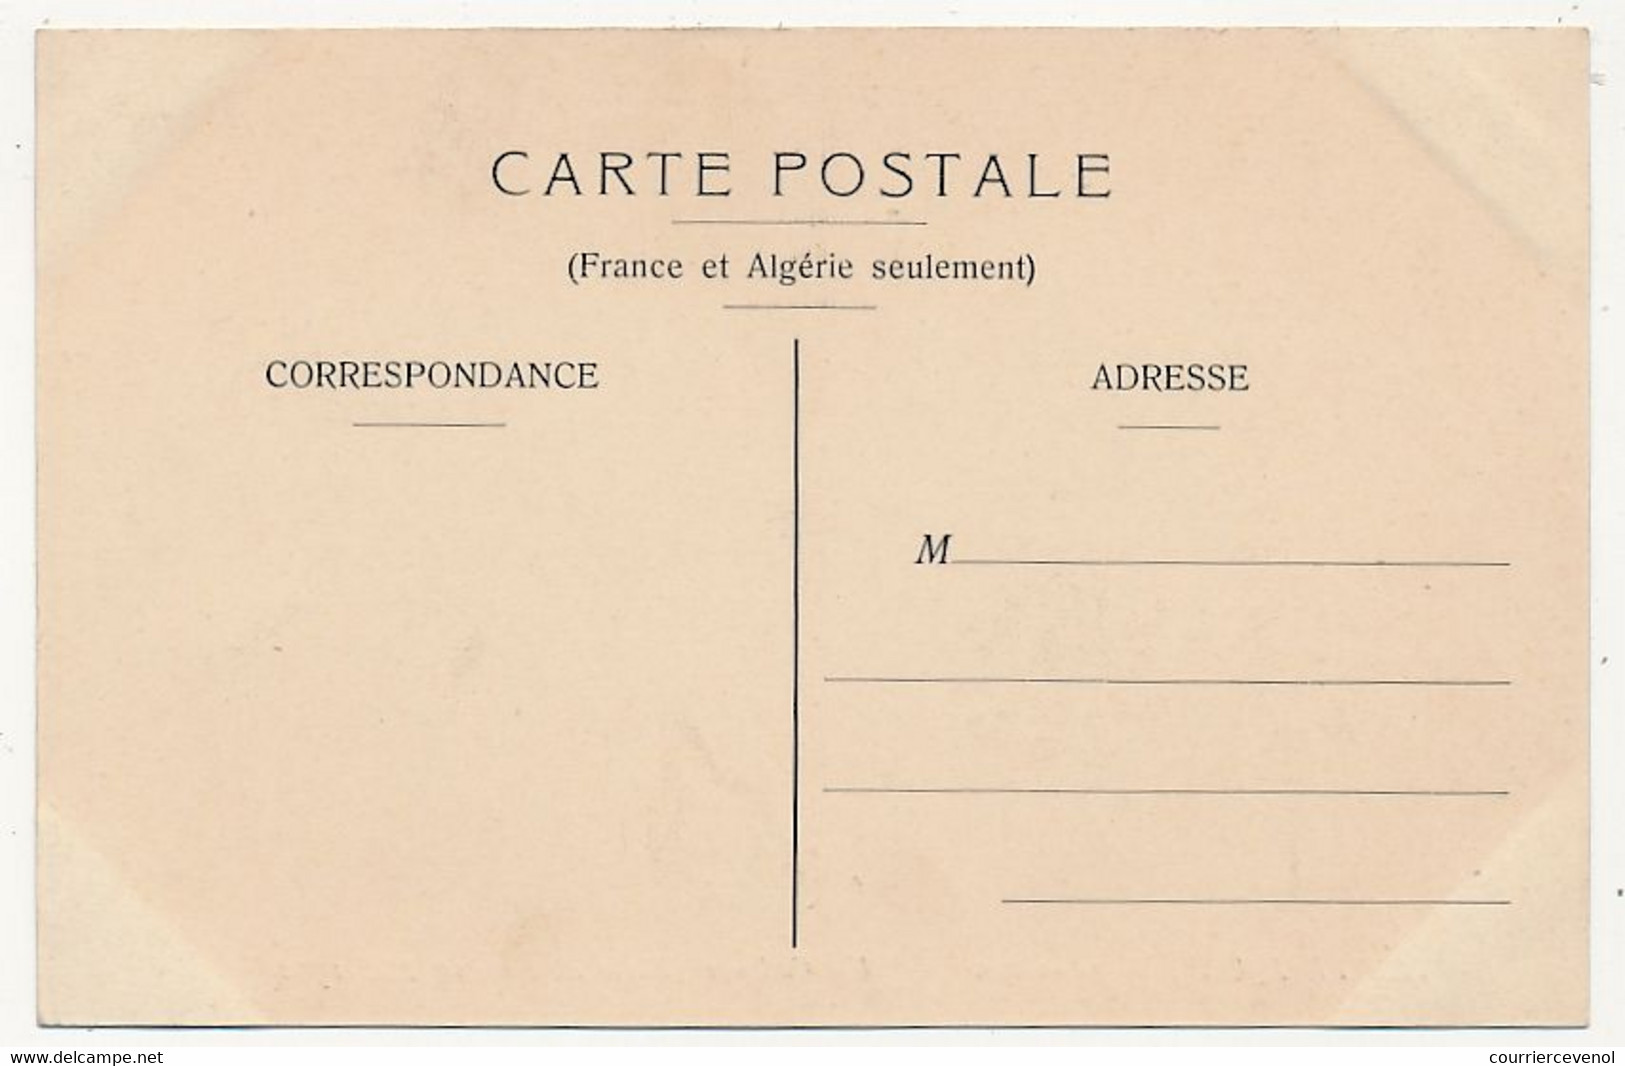 CPA - MARTINIQUE - SAINT-PIERRE De La Martinique - Un Cadavre - Place Gertin - 10 Mai 1902 - Sonstige & Ohne Zuordnung